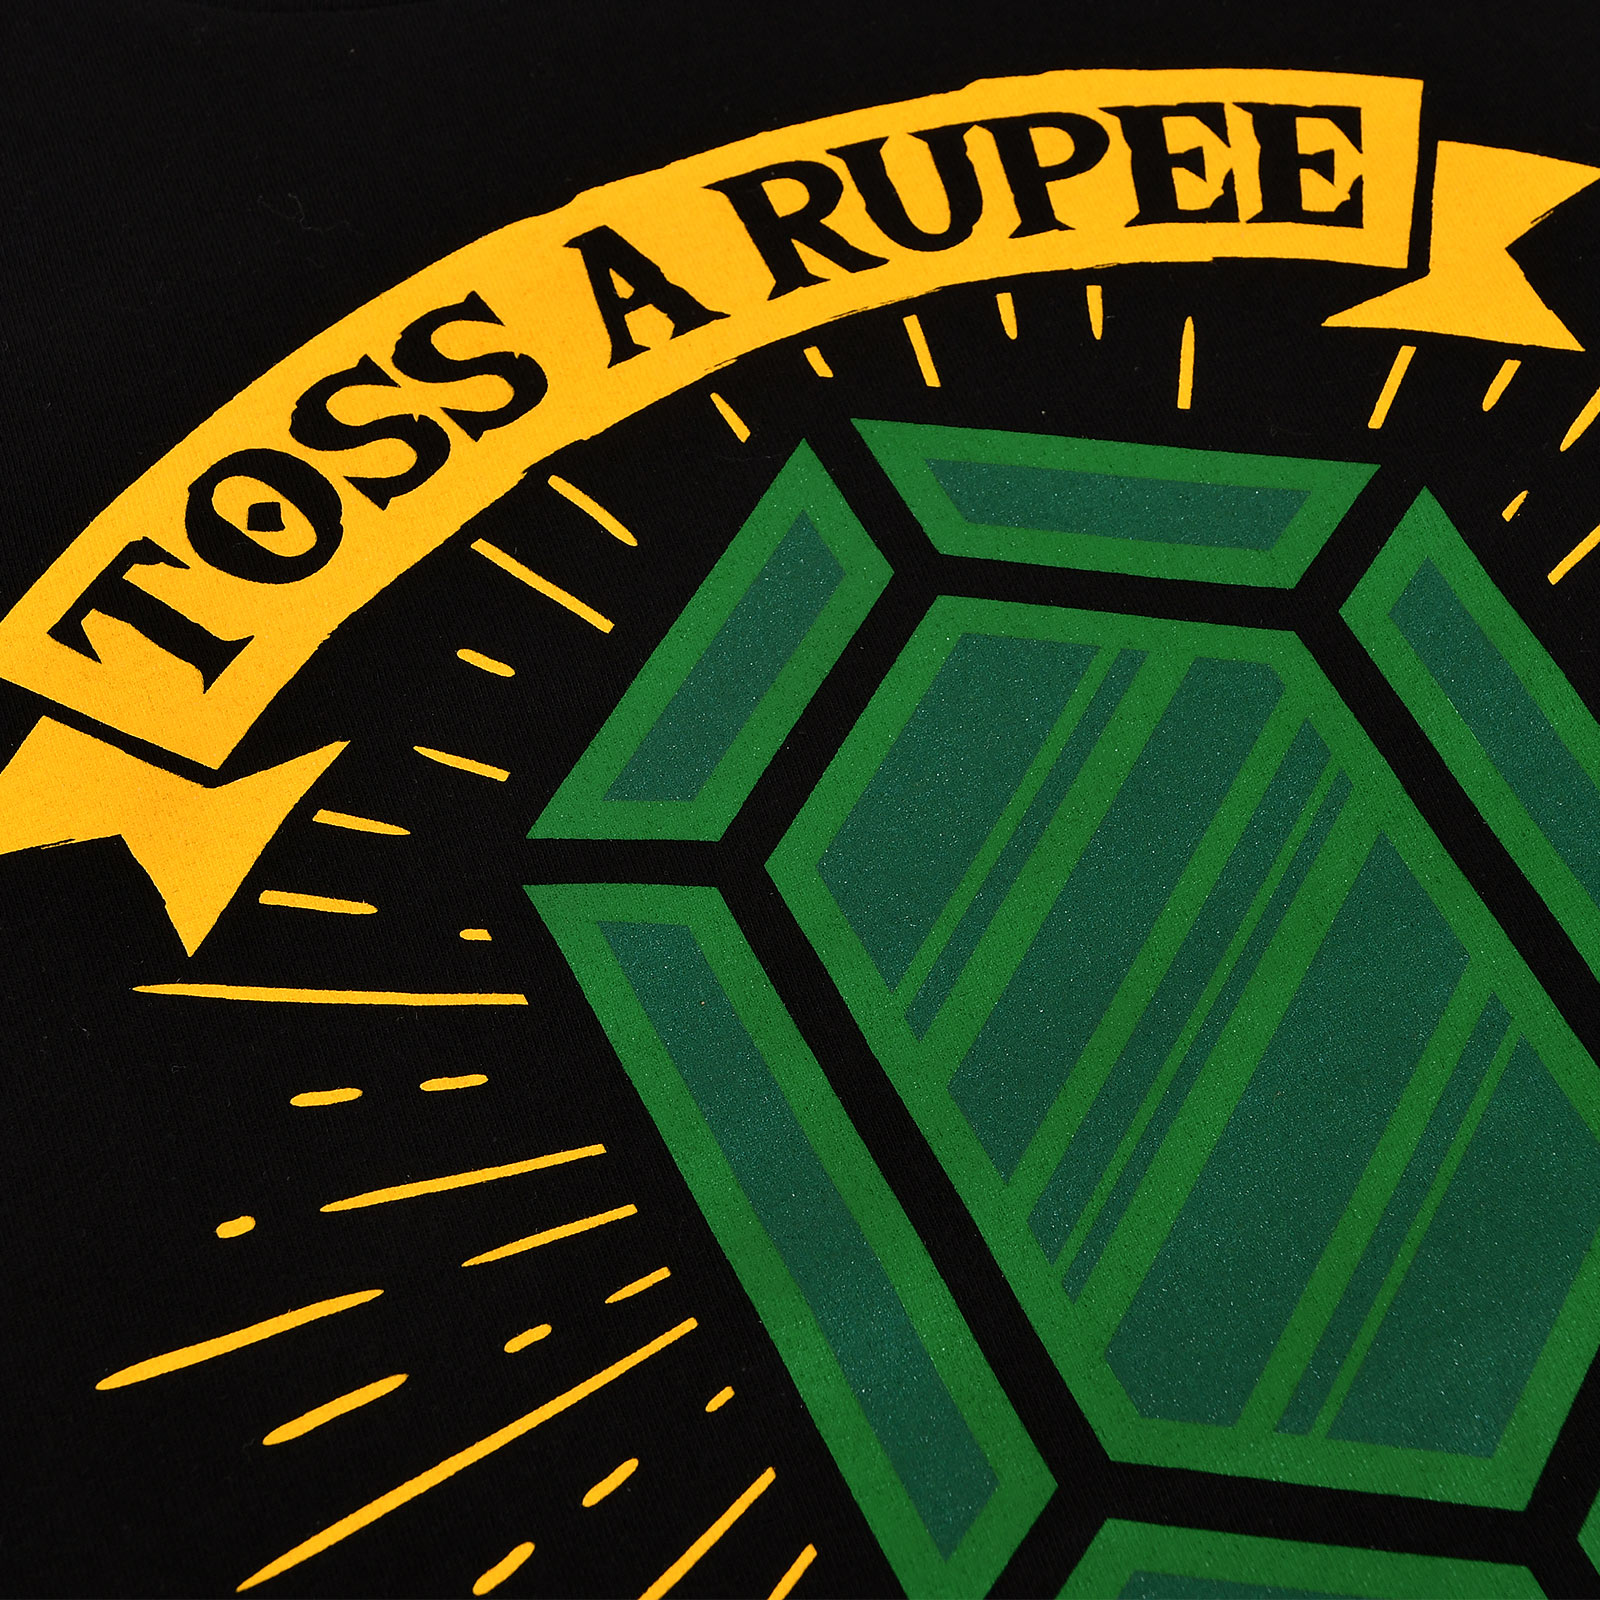 Toss a Rupee to Your Hero T-Shirt voor Zelda Fans Zwart